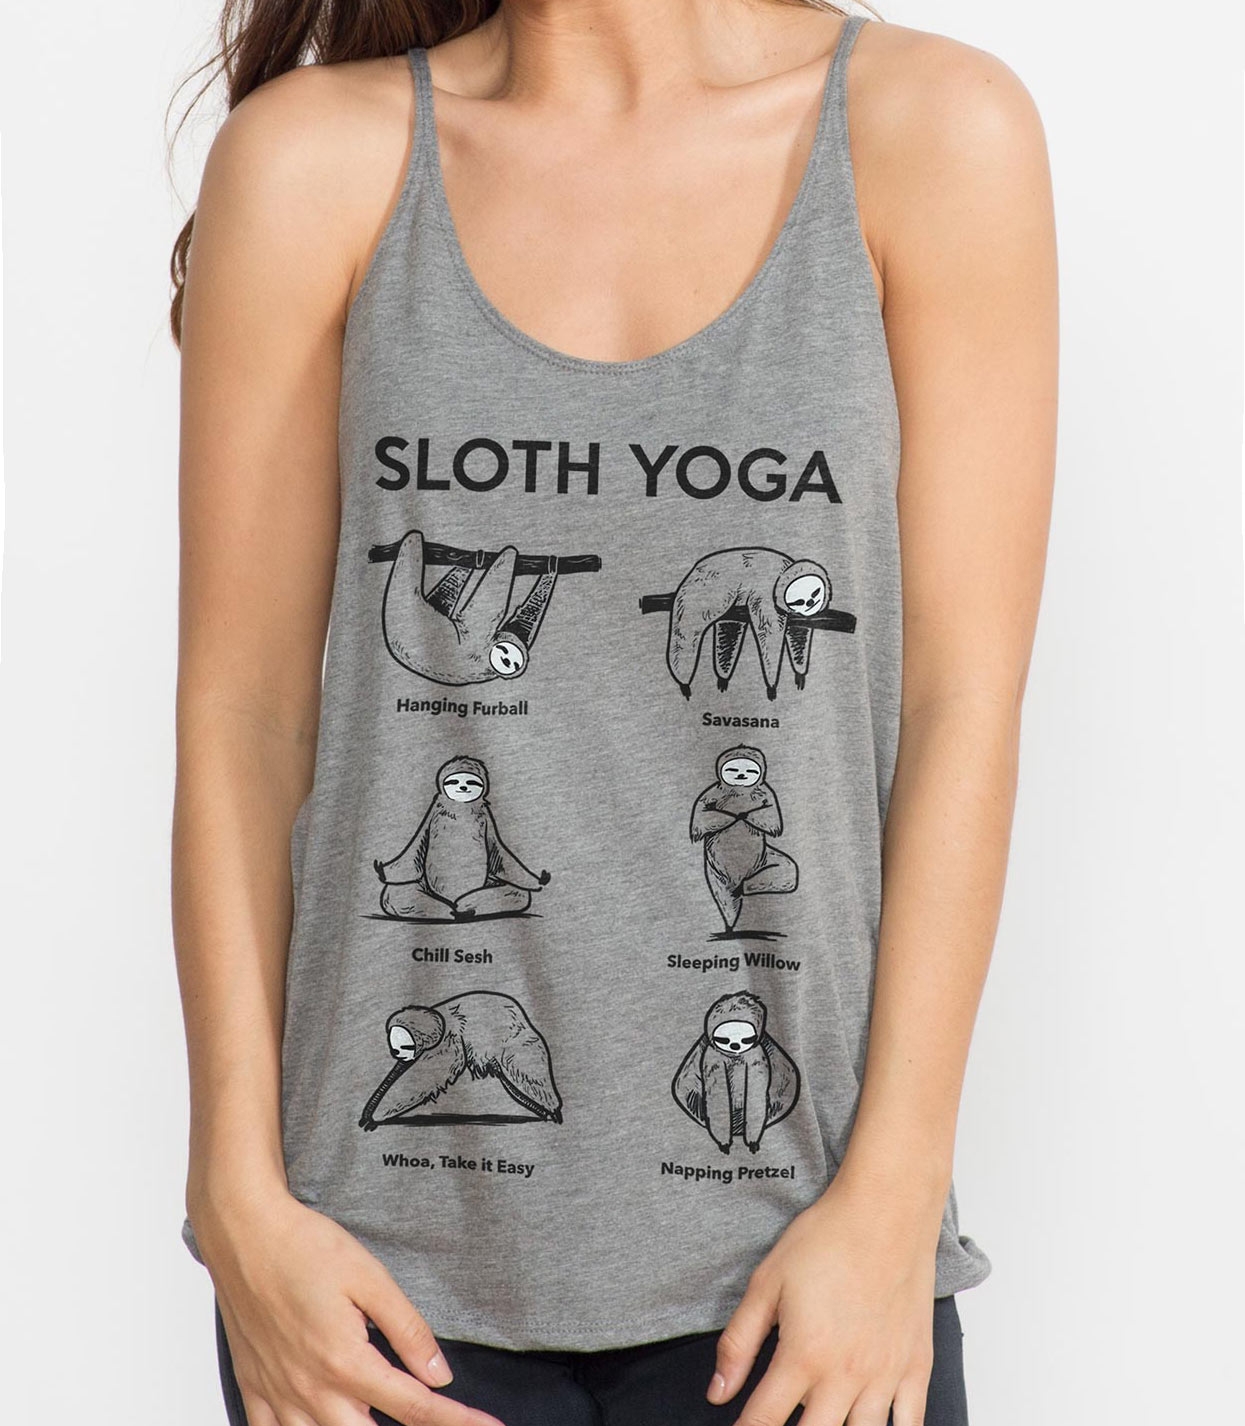 Sloth Yoga Slouchy Tank Women's Tri-Blend Slouchy Tank